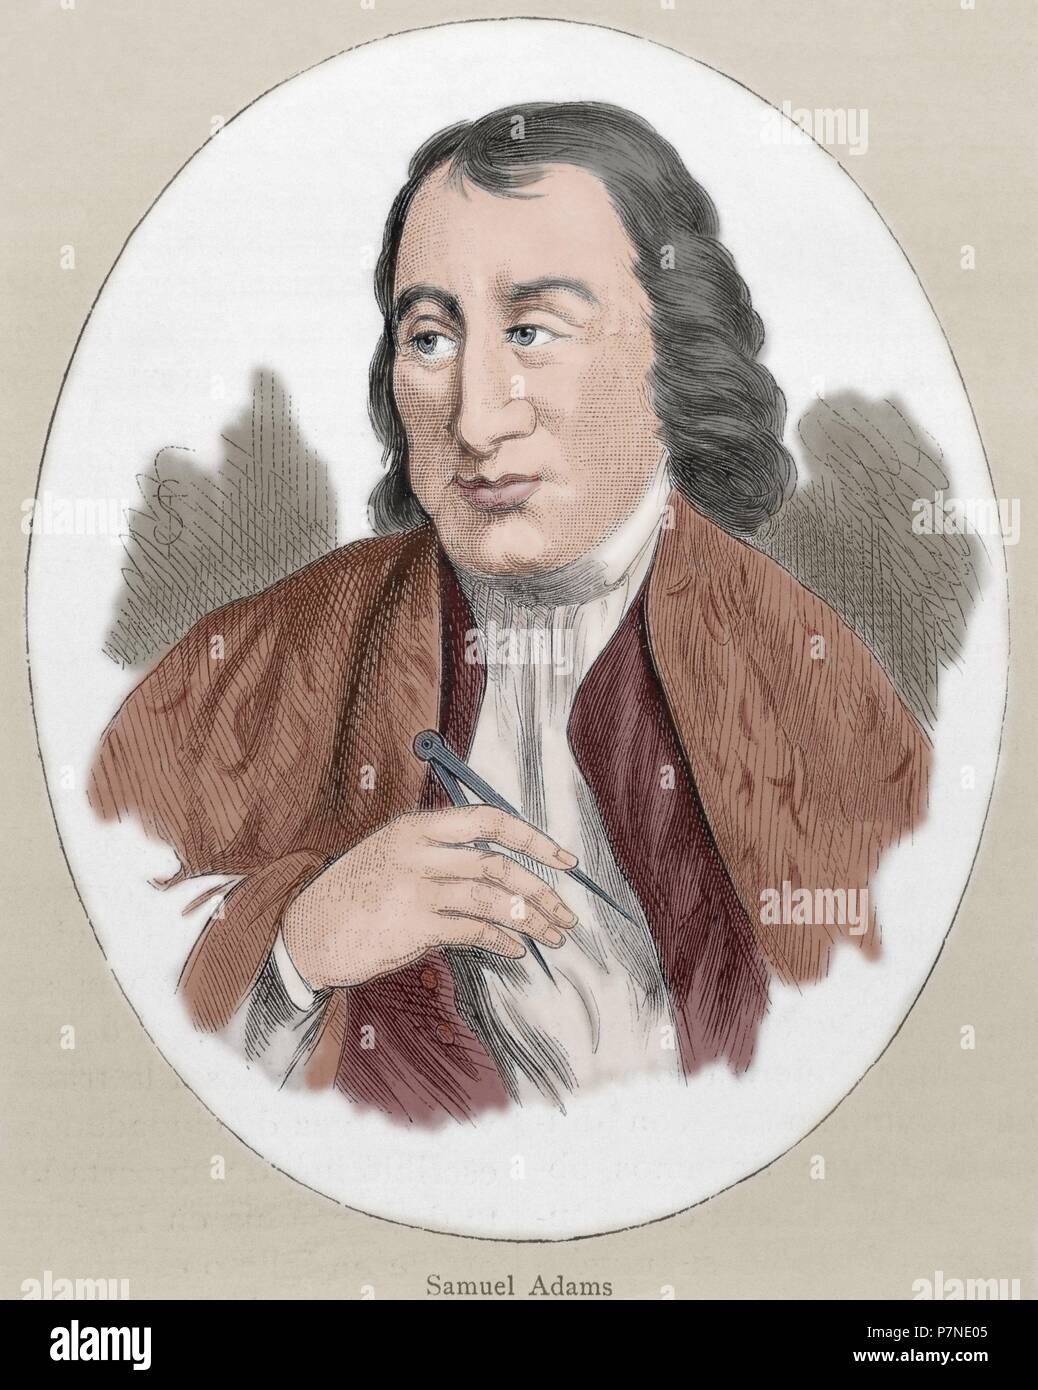 Samuel Adams (1722-1803). Amerikanischer Staatsmann, politischer Philosoph und einer der Gründerväter der Vereinigten Staaten. Porträt. Gravur. Farbige. Stockfoto